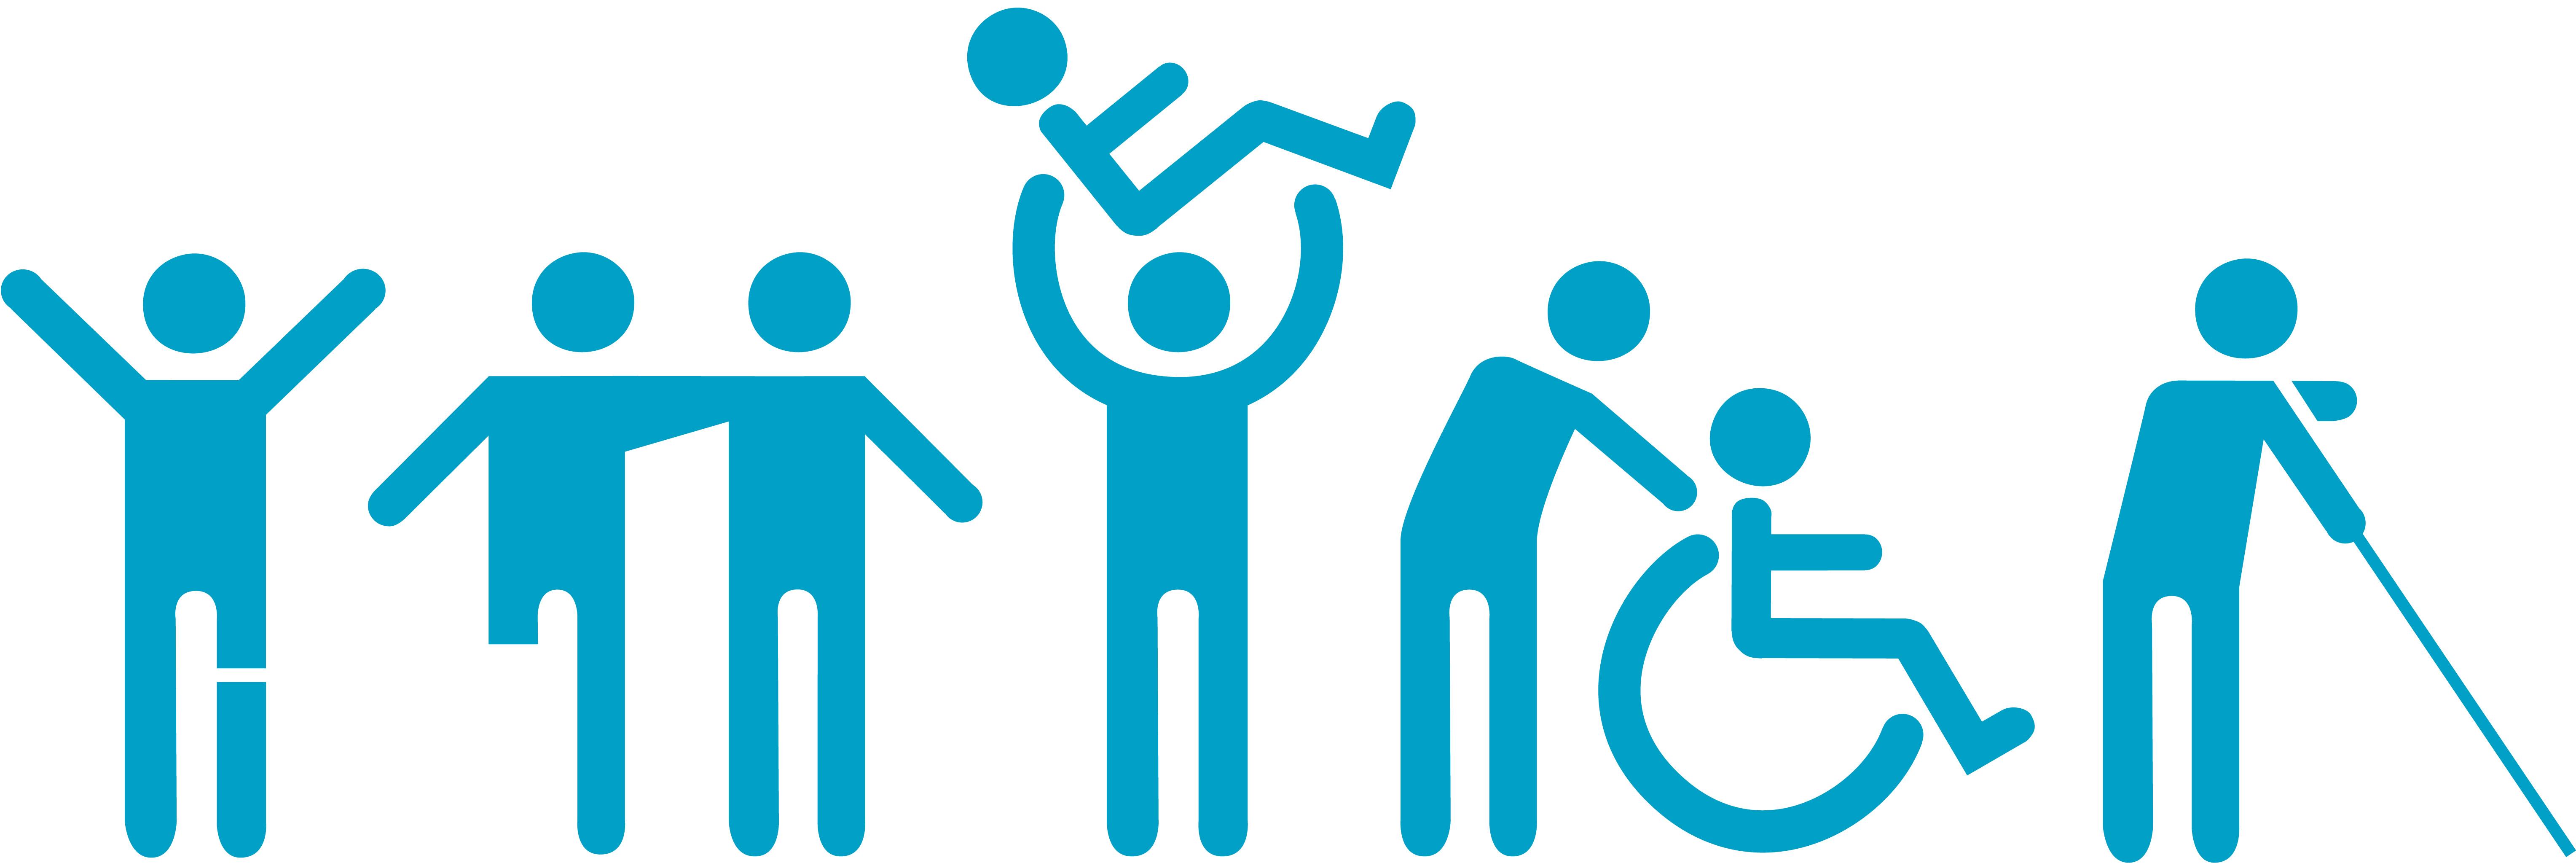 Логотип для людей с ограниченными возможностями